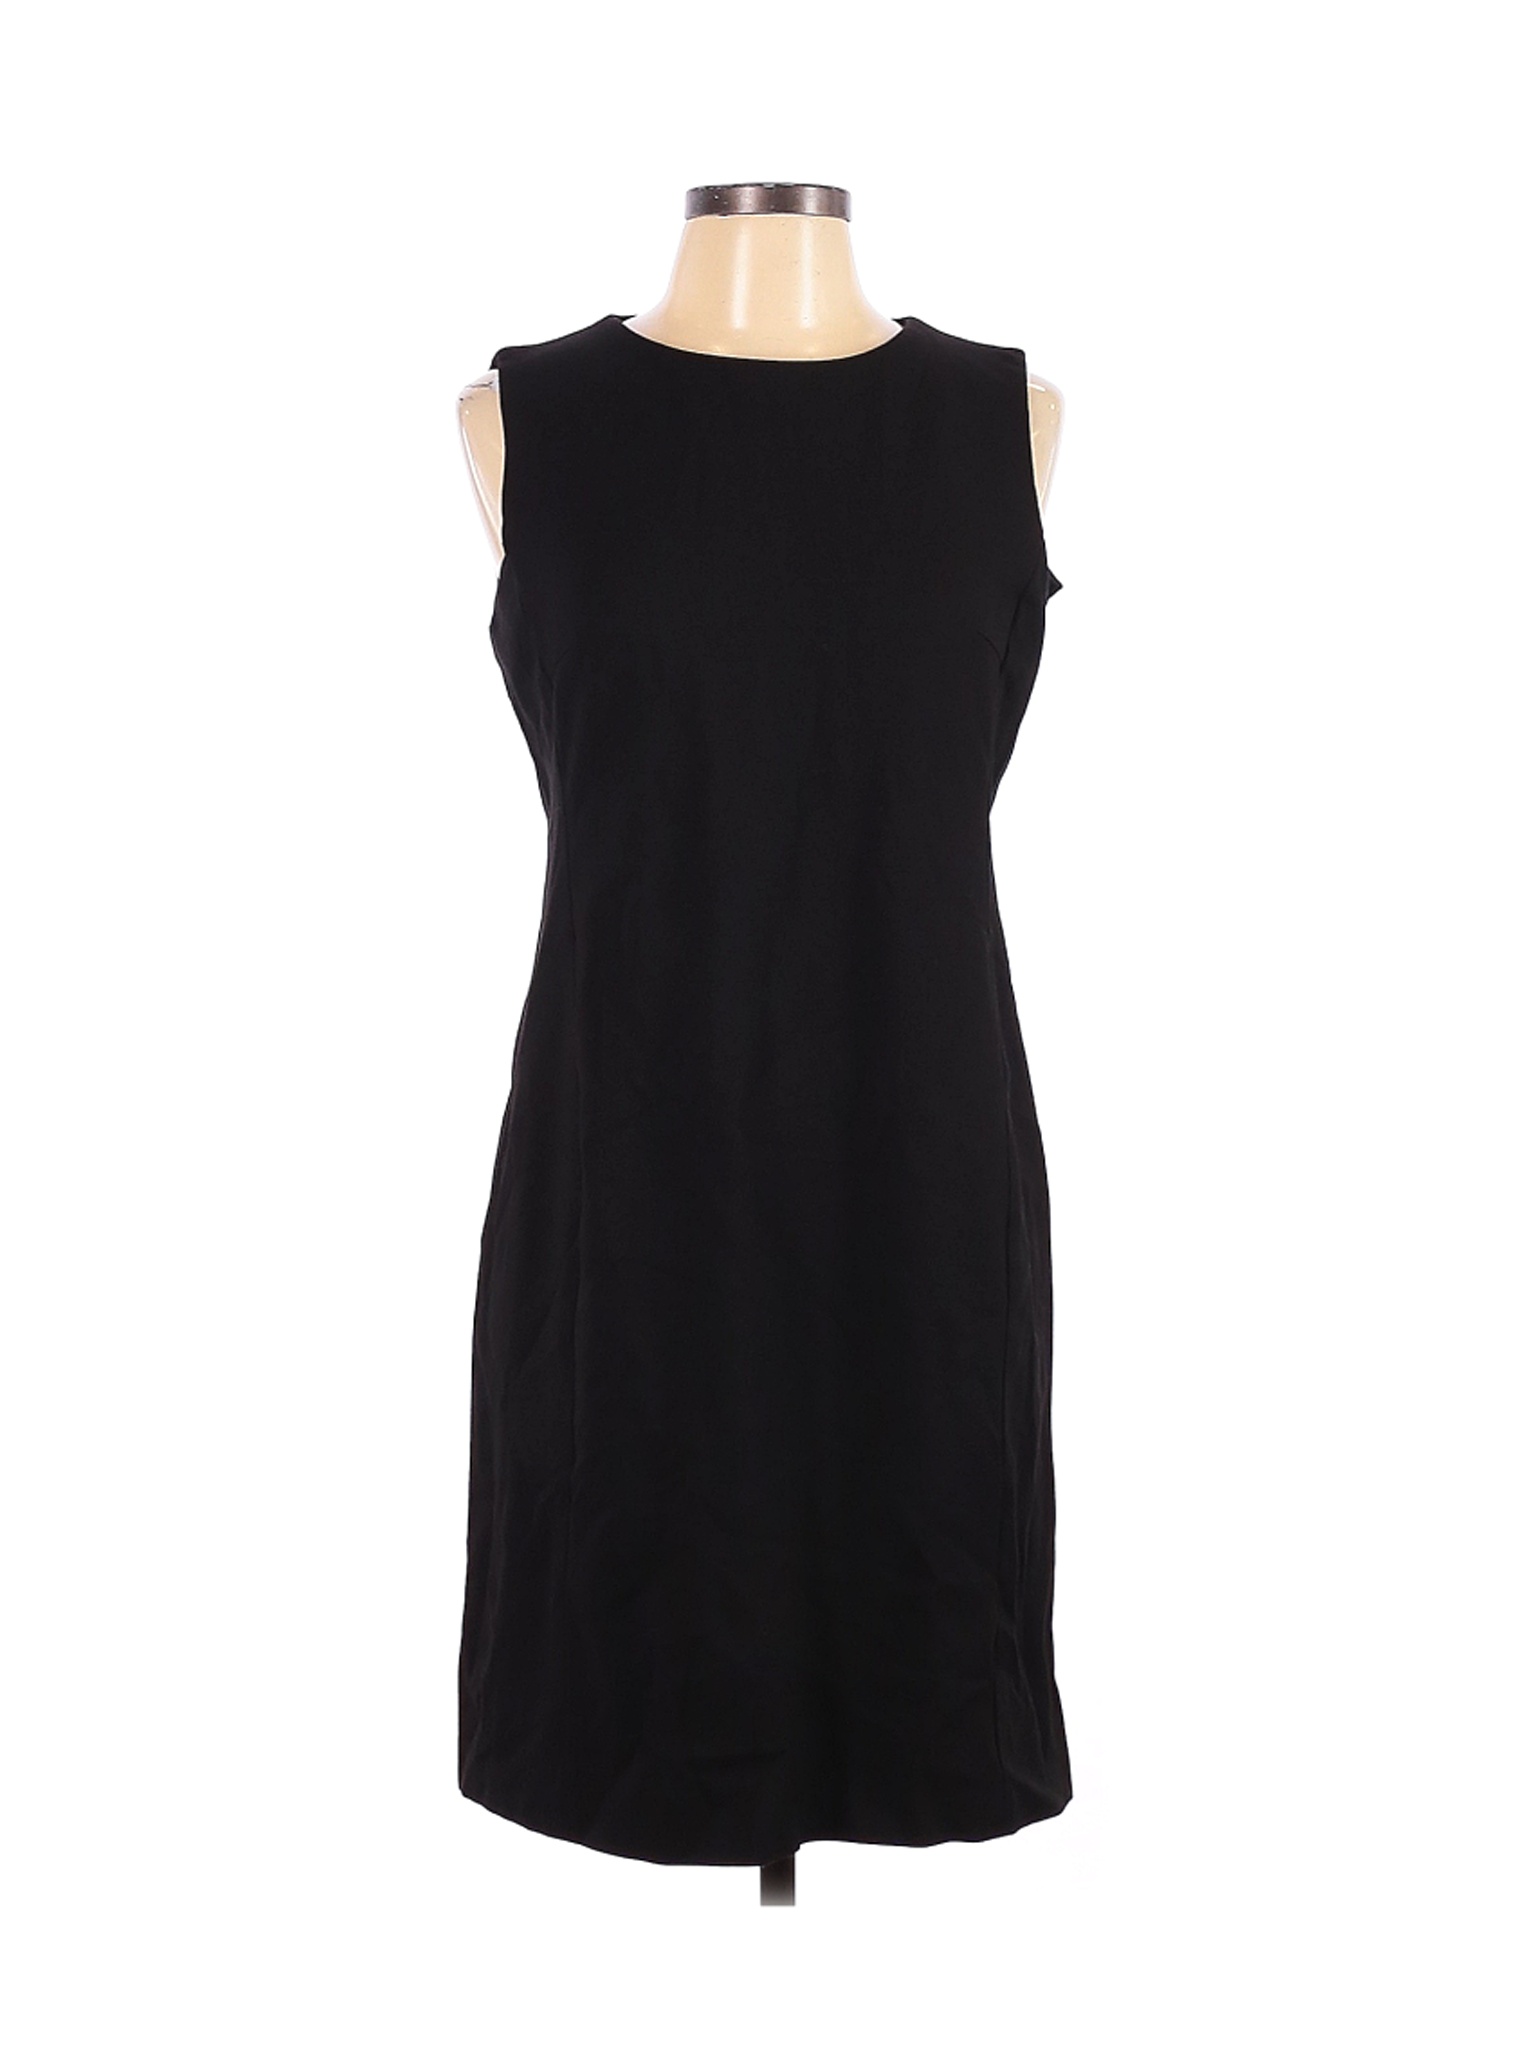 Uniqlo Women Black Casual Dress L | eBay